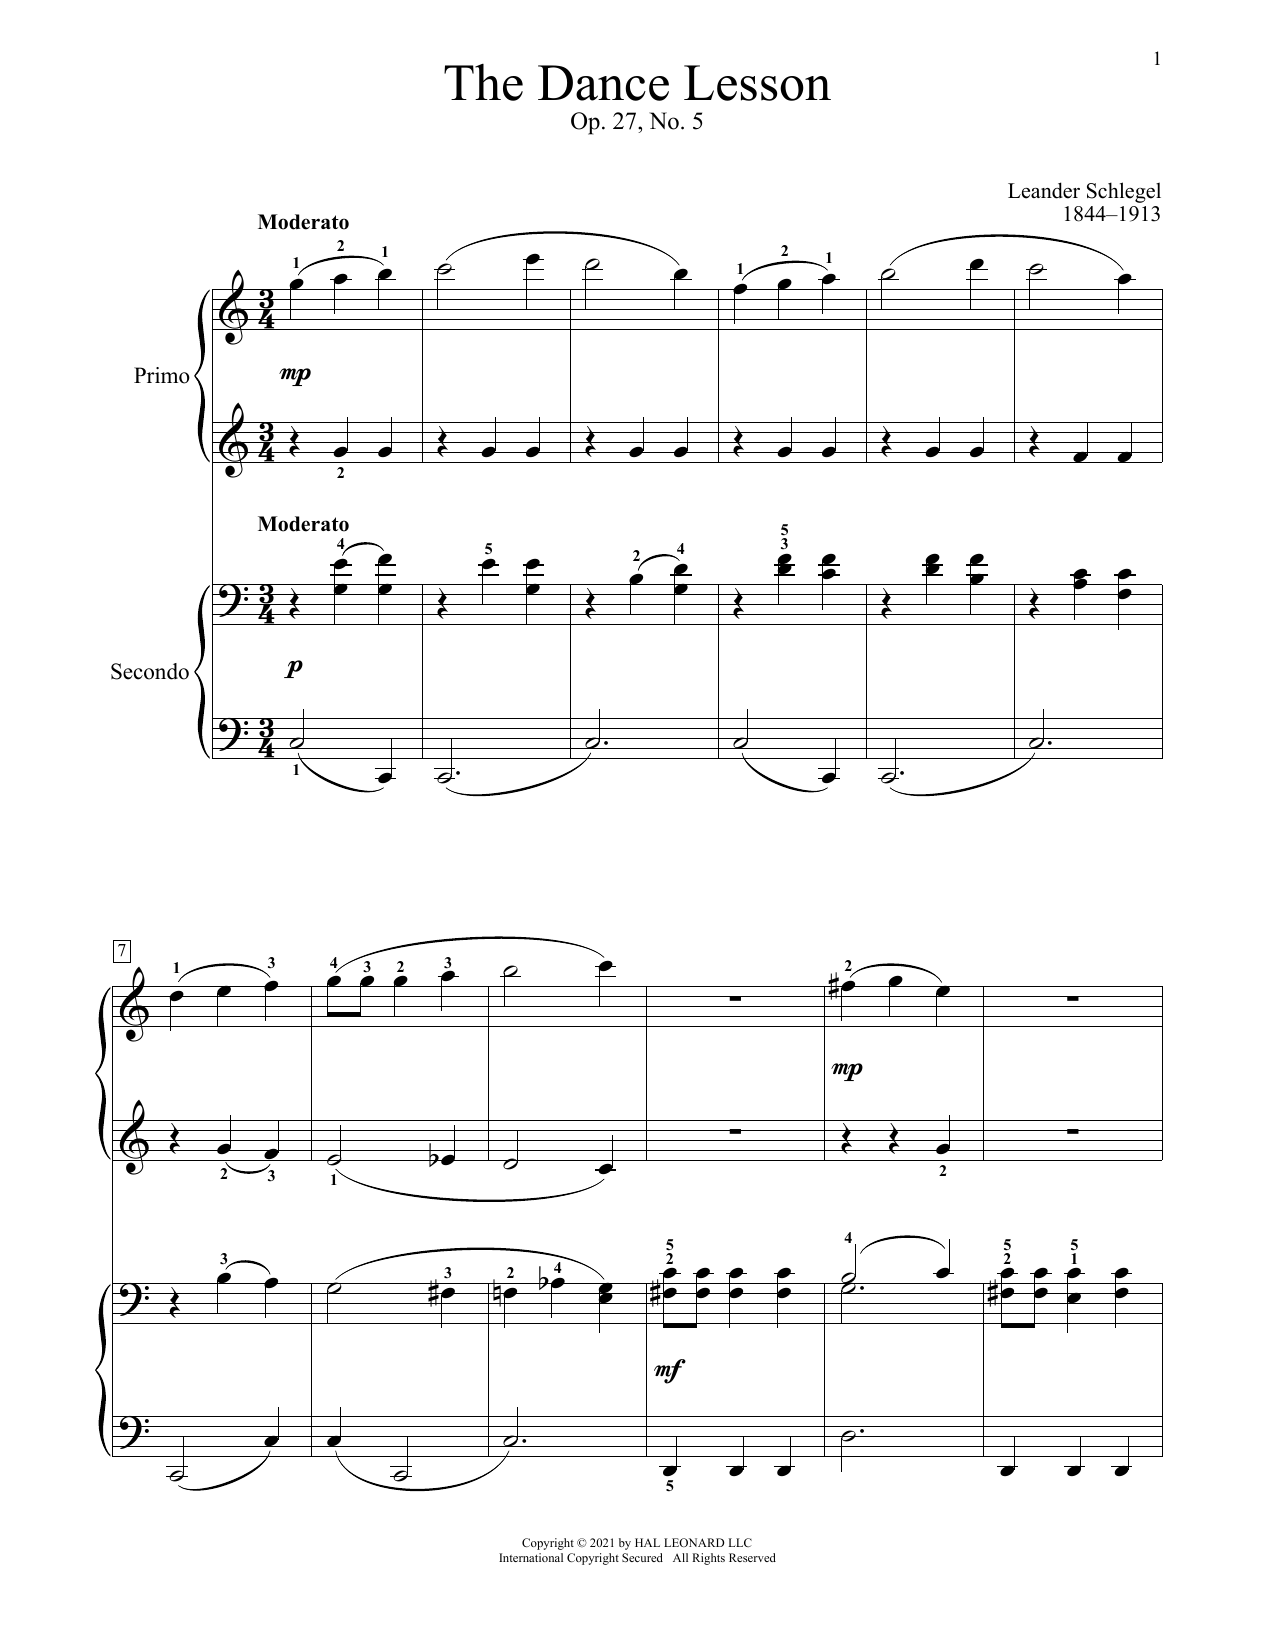 The Dance Lesson, Op. 27, No. 5 (Piano Duet) von Leander Schlegel